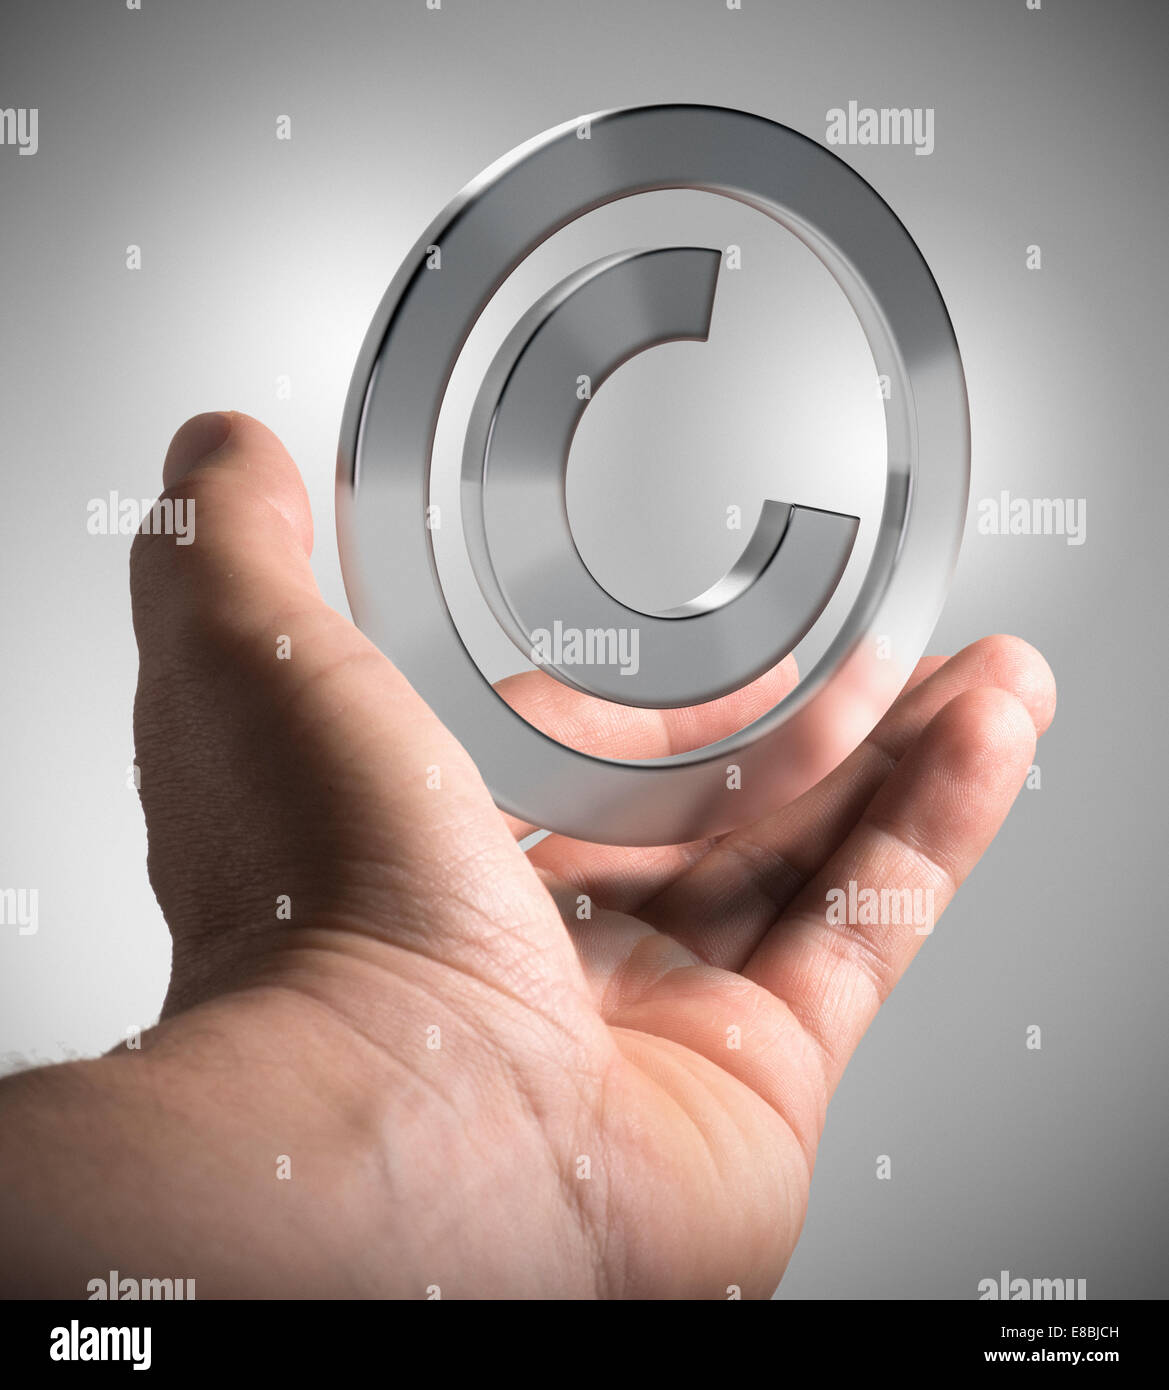 Mano de hombre sosteniendo el símbolo de copyright sobre fondo gris, concepto imagen para ilustración de la propiedad intelectual. Foto de stock